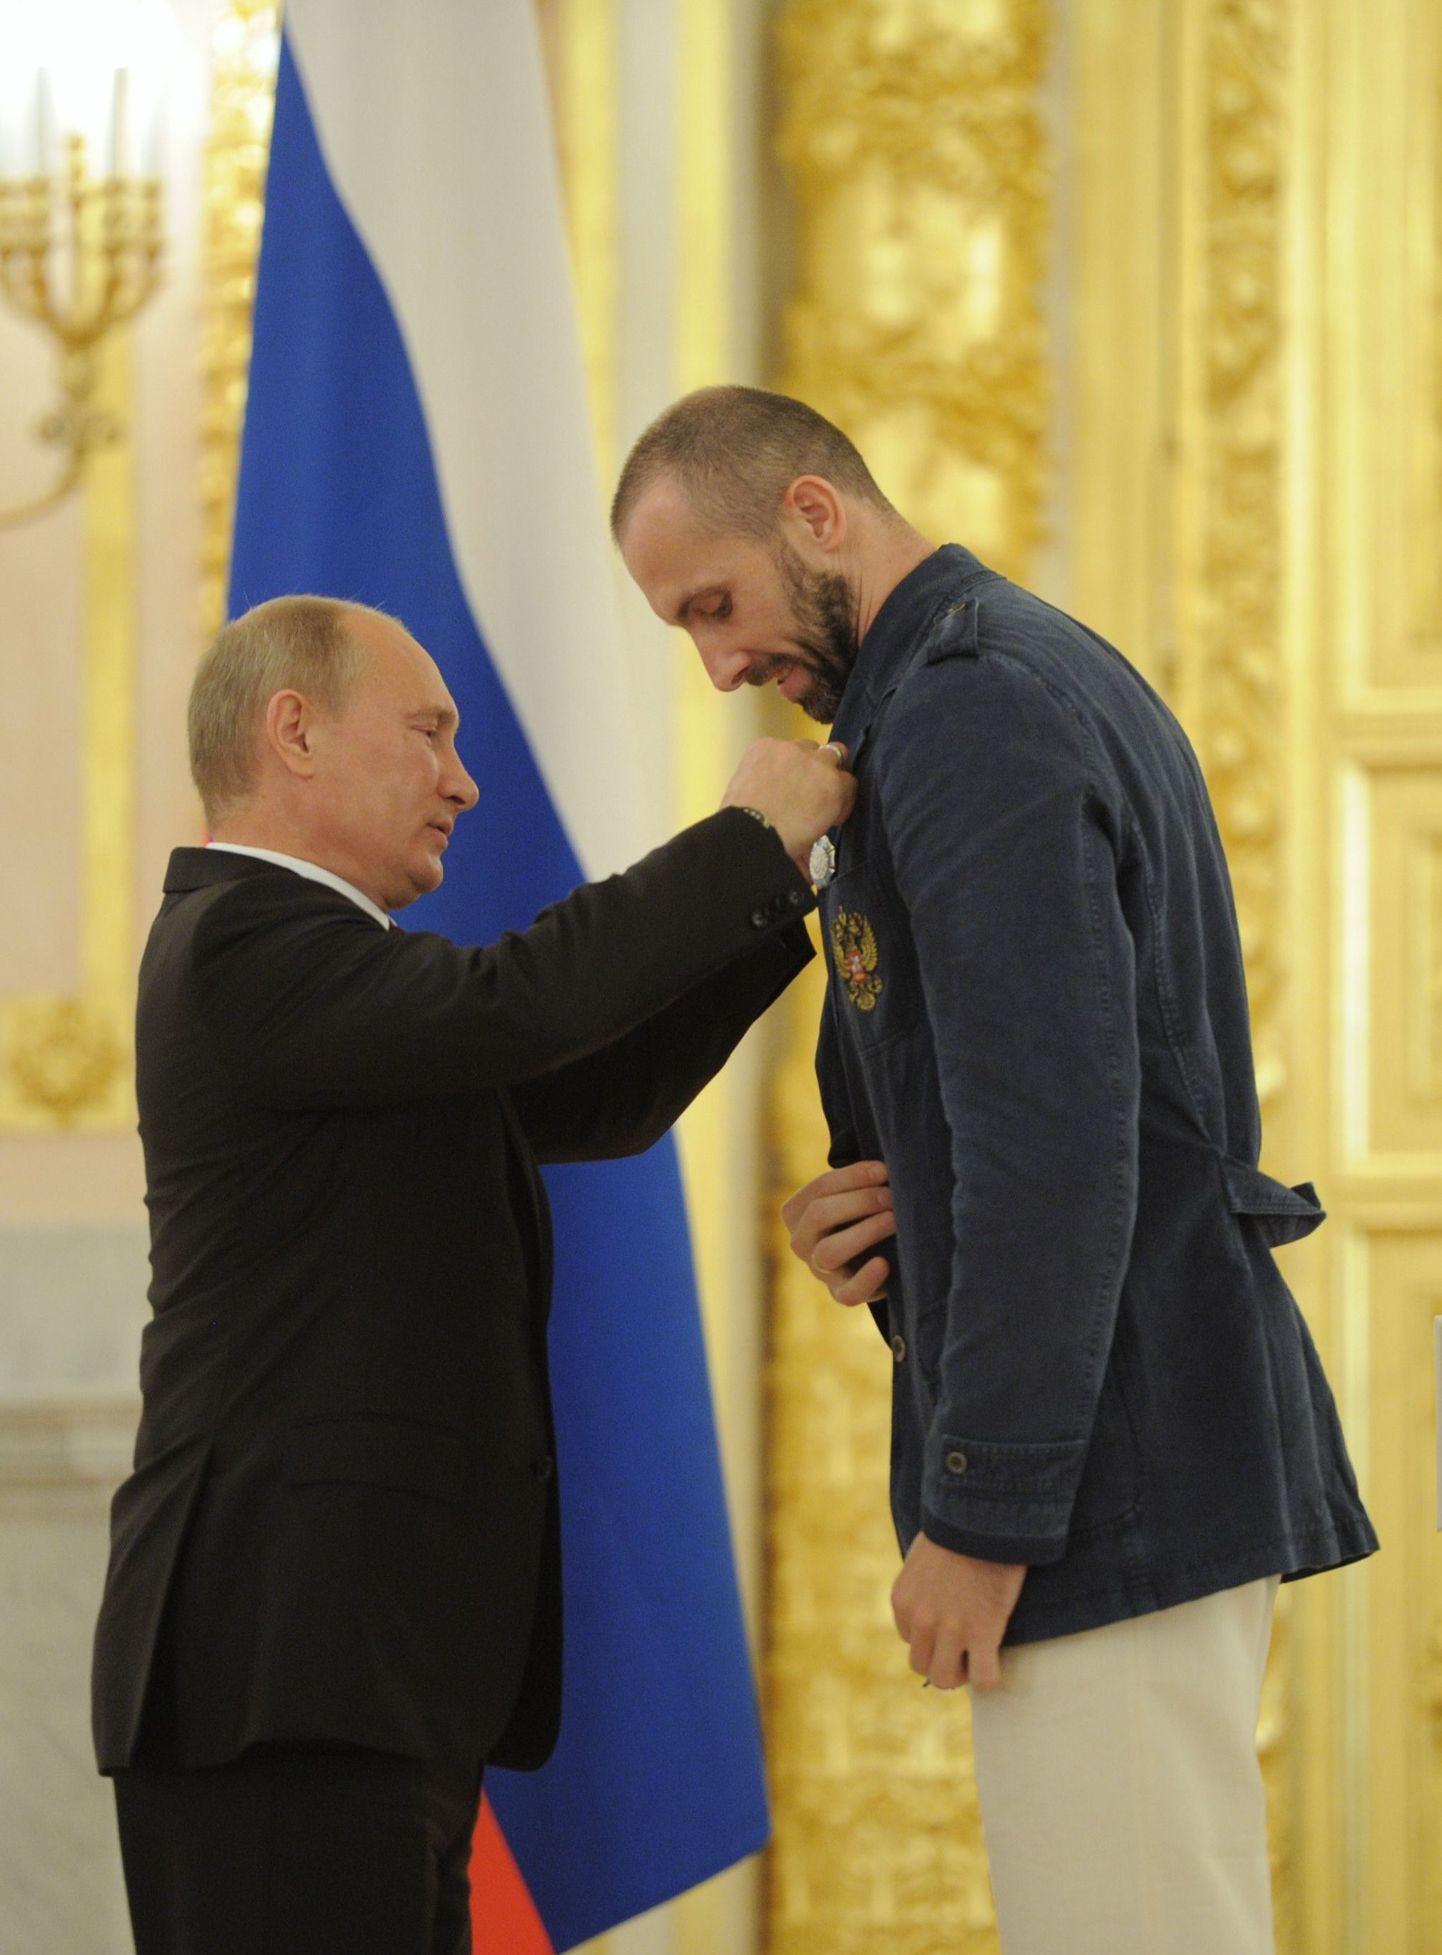 Venemaa prseident Vladimir Putin ja võrkpallikoondise kapten Sergei Tetjuhhin.